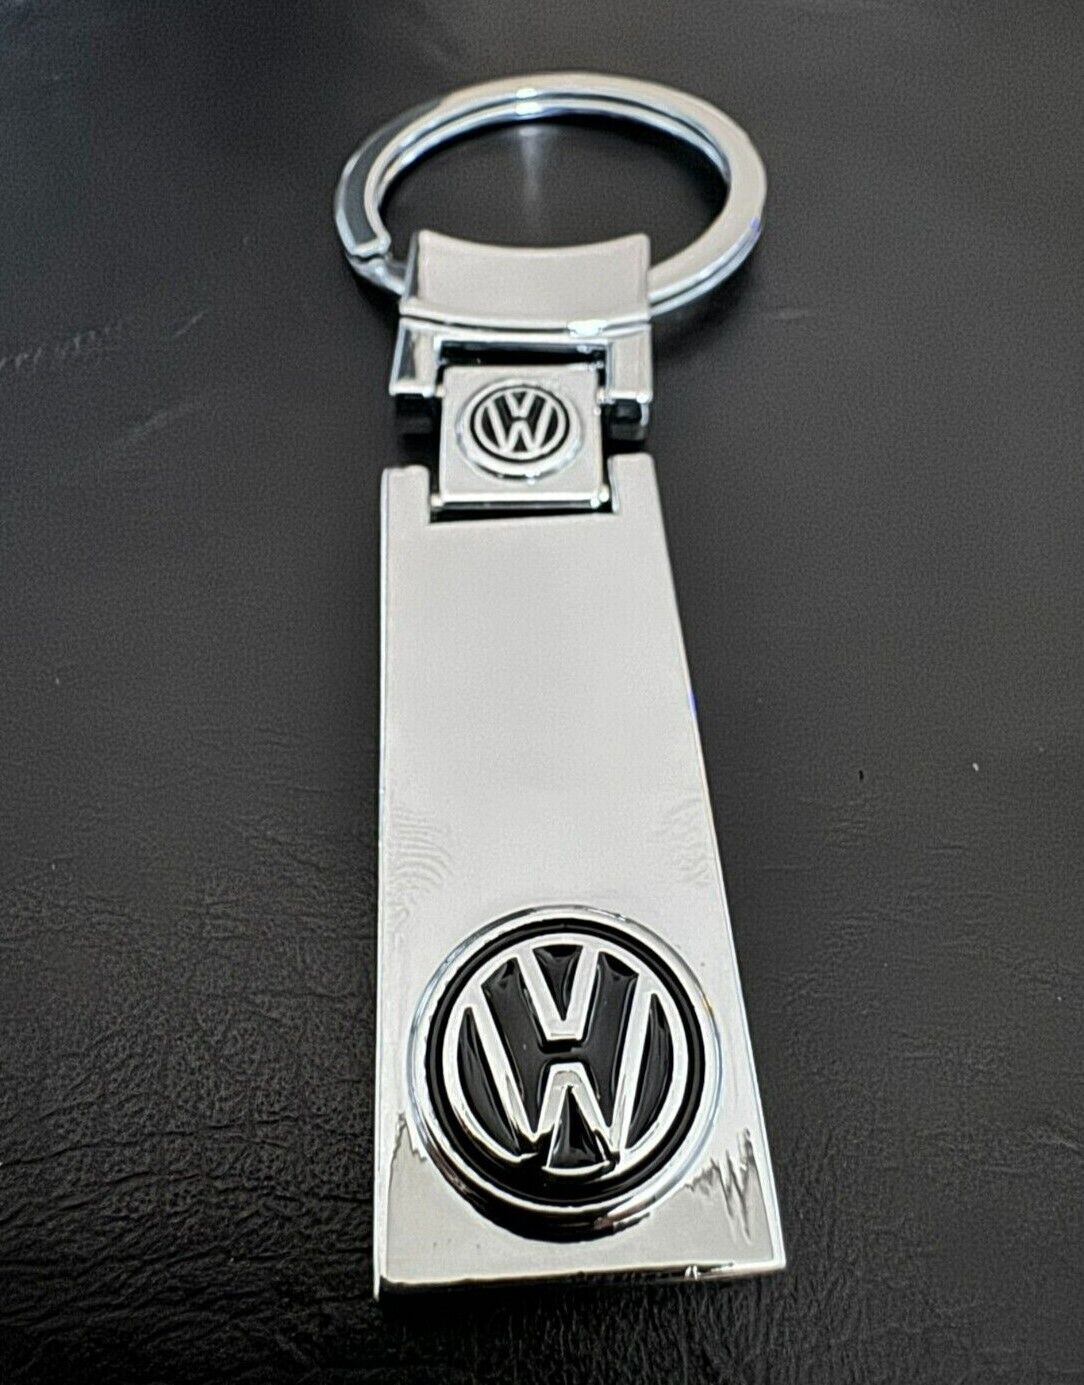 Nicest Elegant VW Volkswagen Keychain Online - Sleek Mirror Finish, BLACK Logo